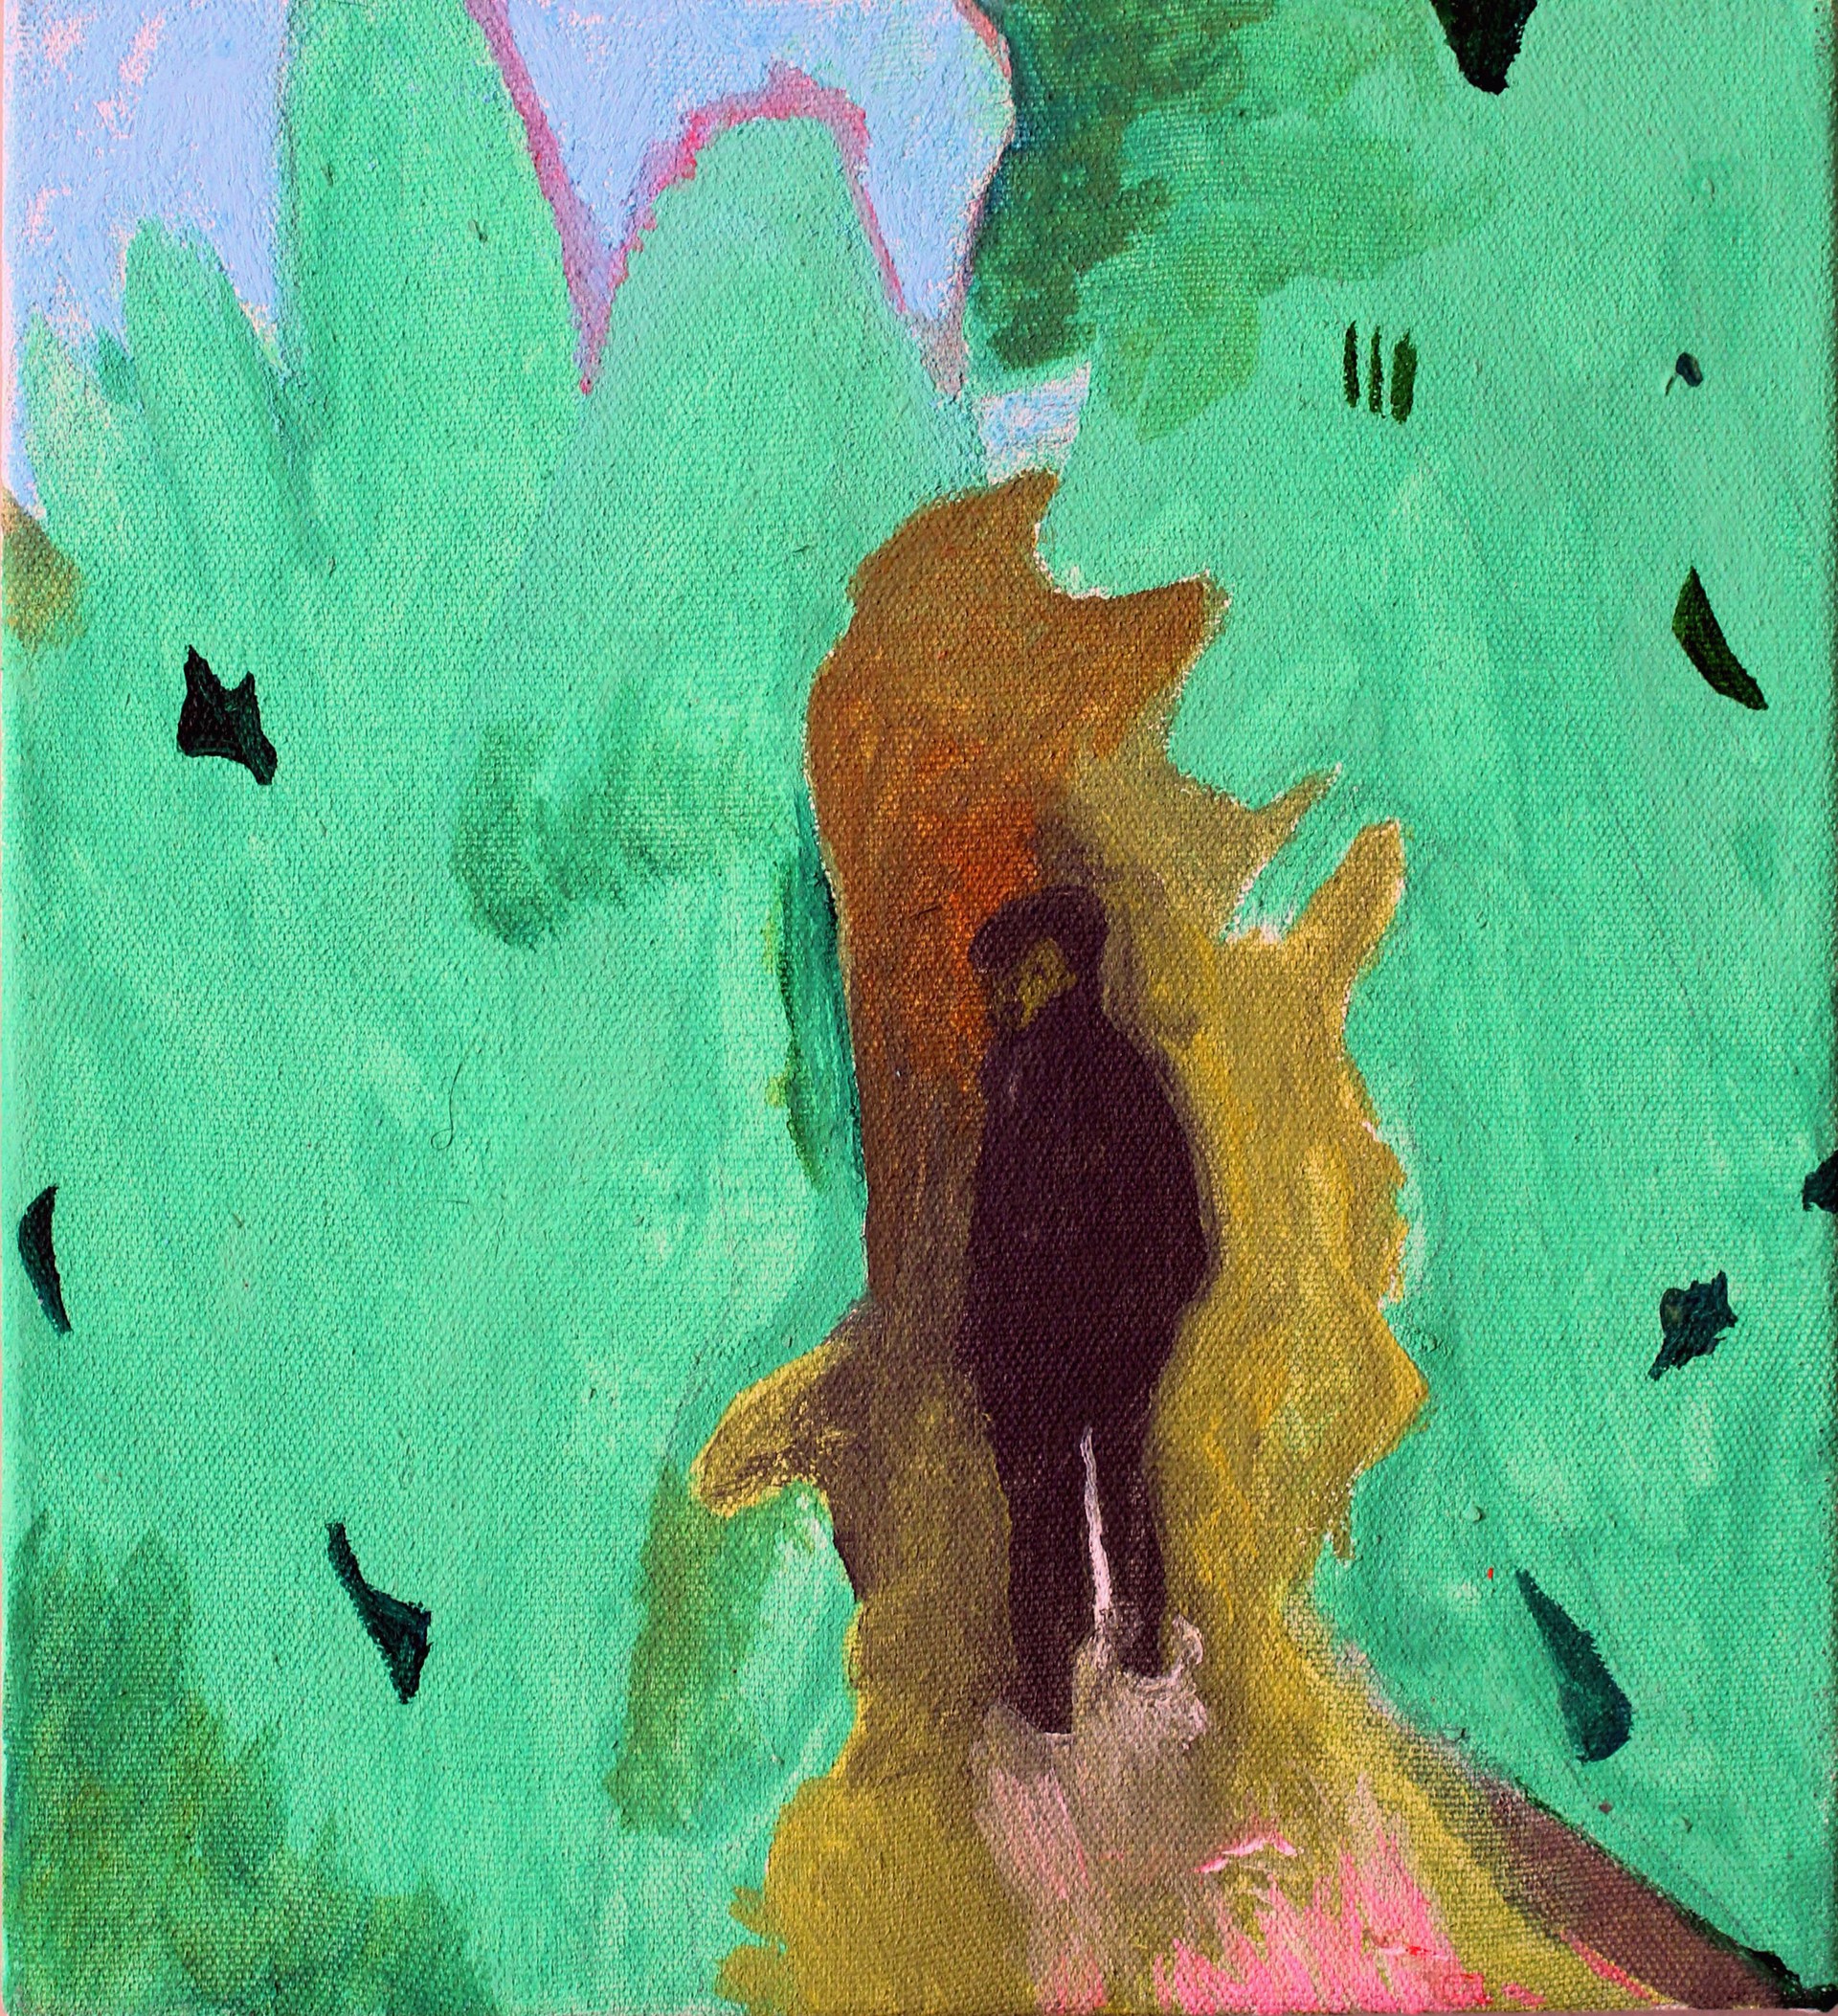 Joshua Tree in Green by John Paul Kesling